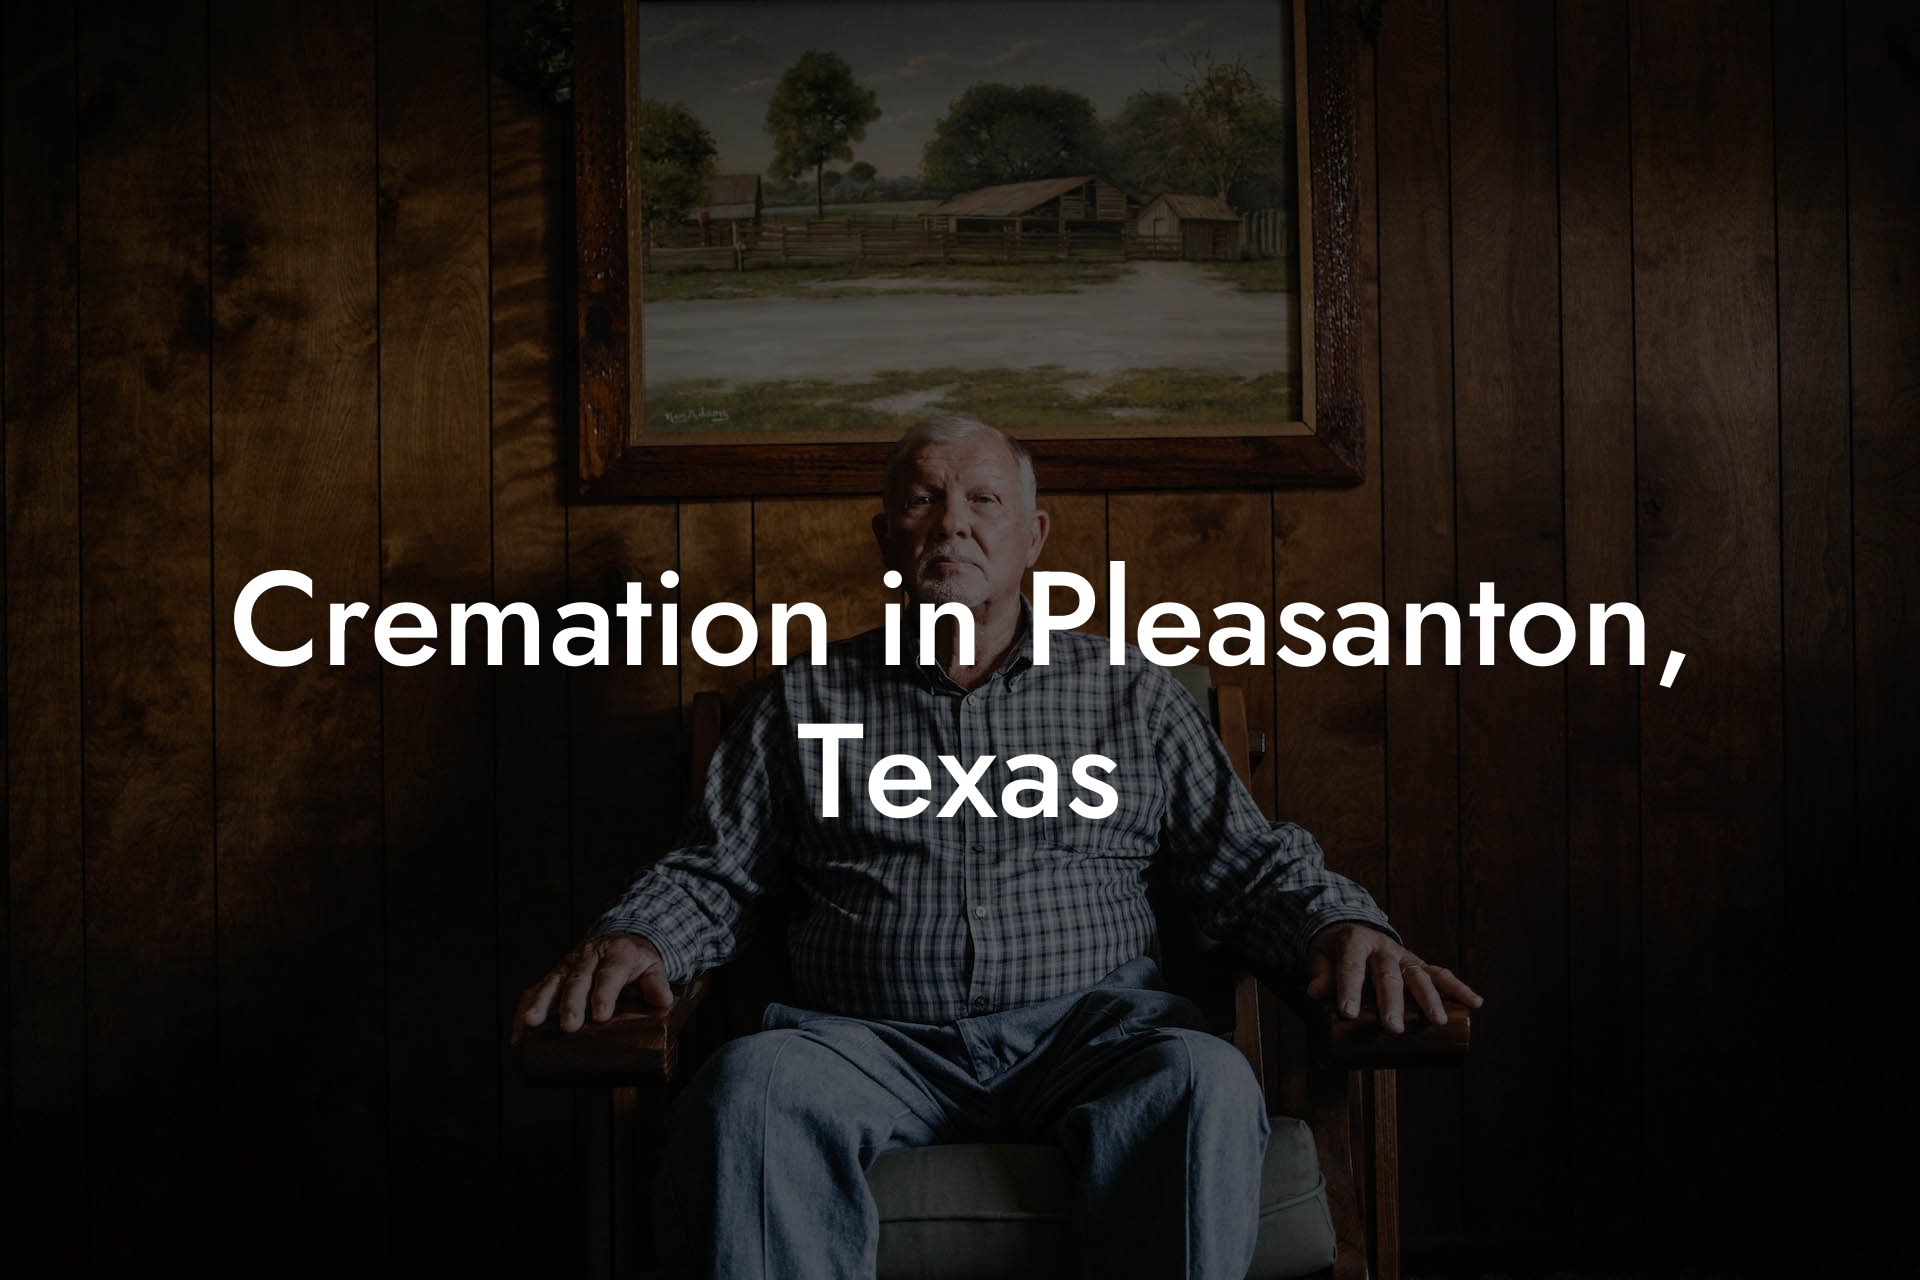 Cremation in Pleasanton, Texas